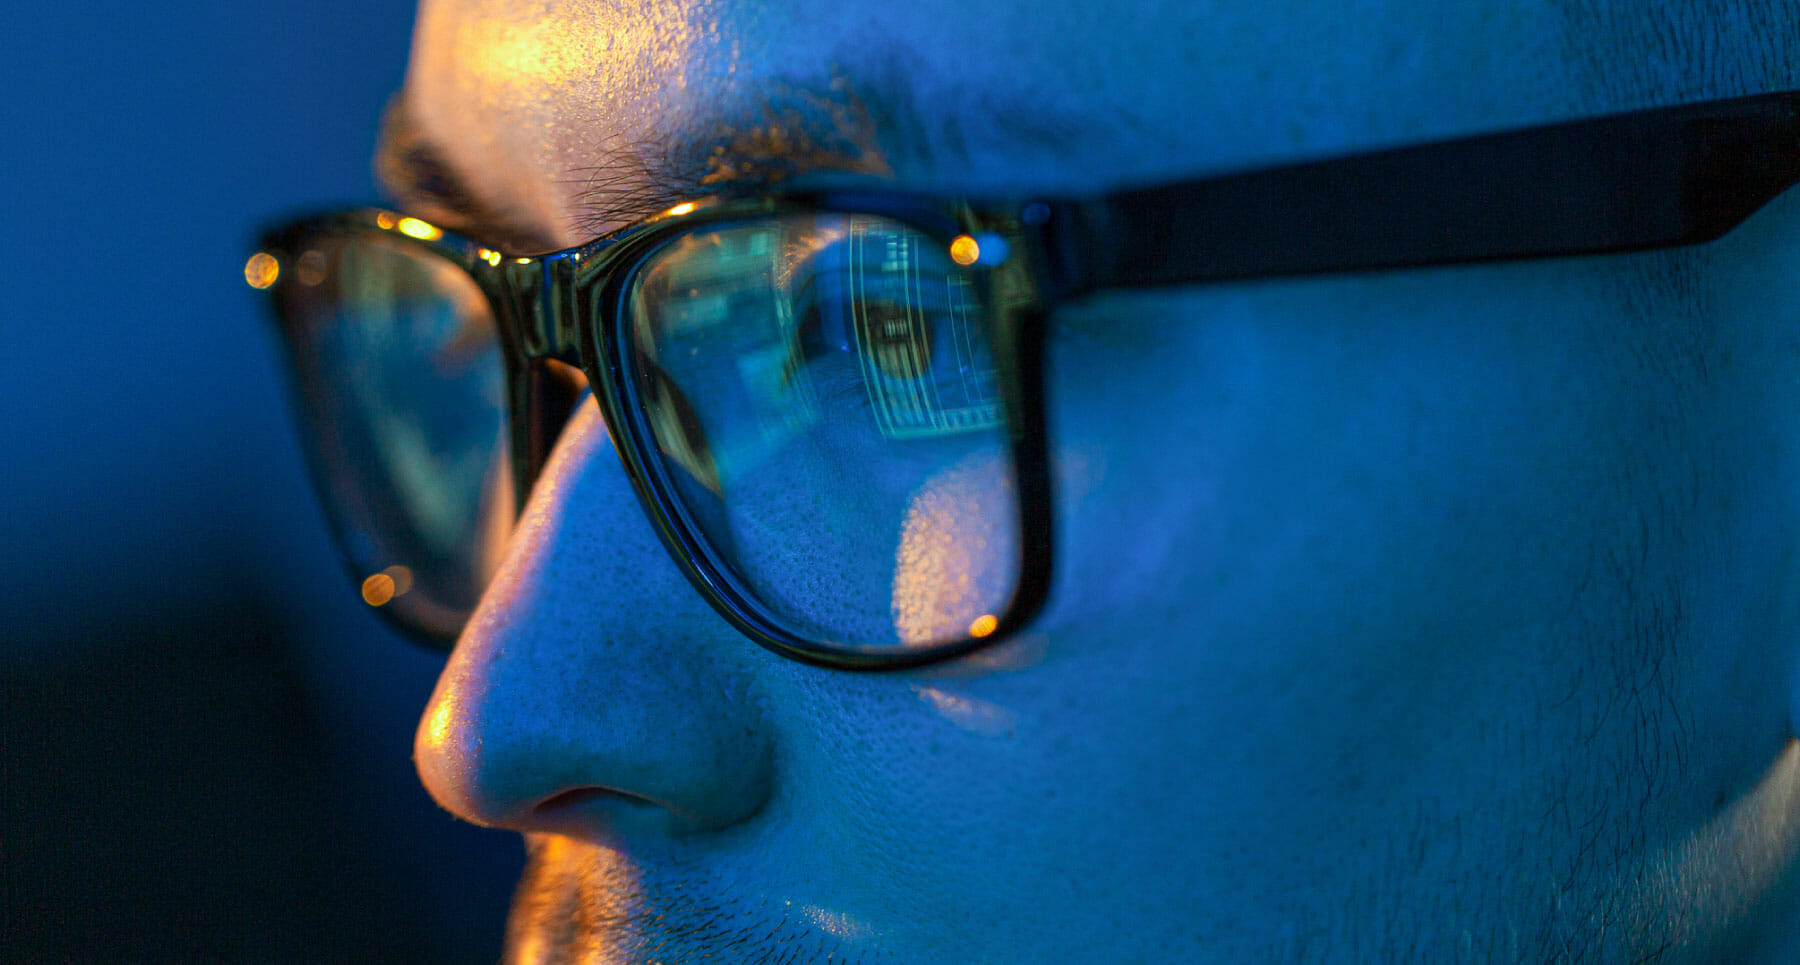 The 10 Best Blue Light Blocking Glasses for 2019 - Online ...